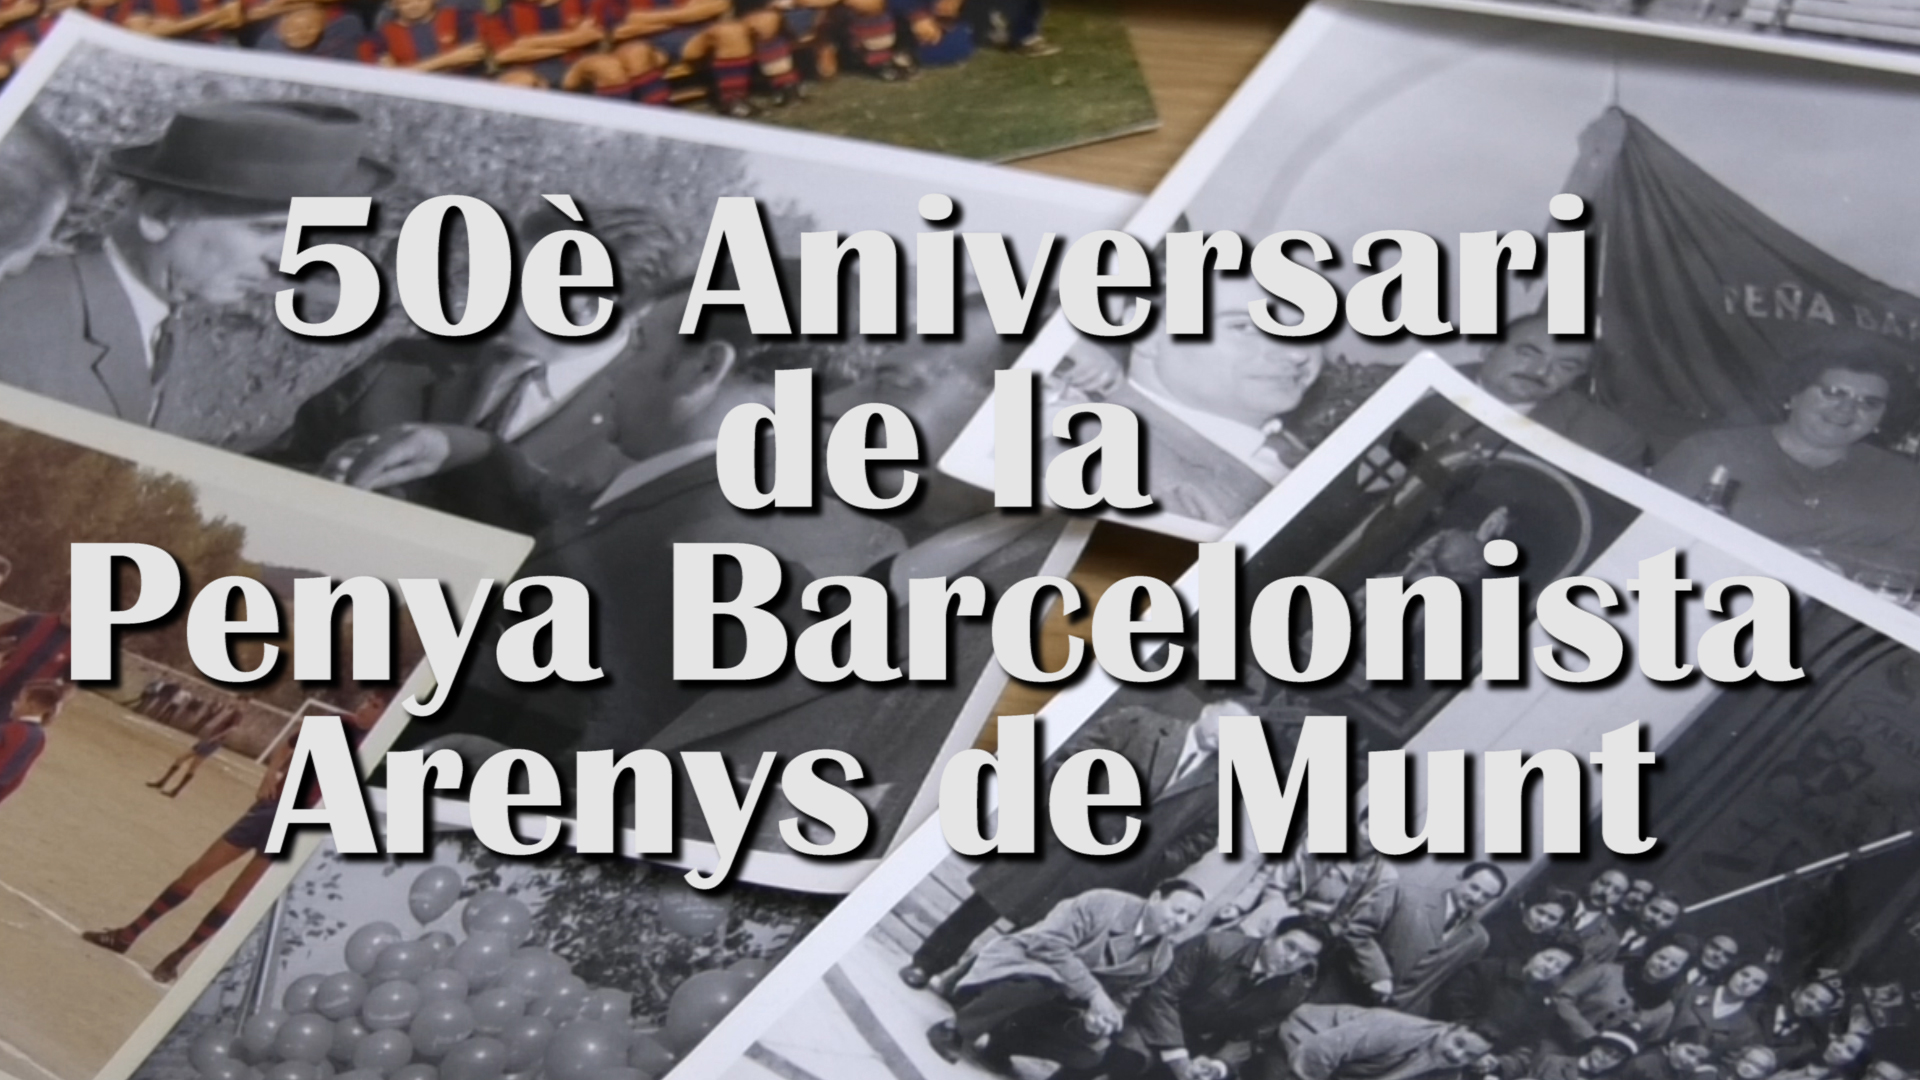 NOU REPORTATGE: 50 anys de la Penya Barcelonista Arenys de Munt